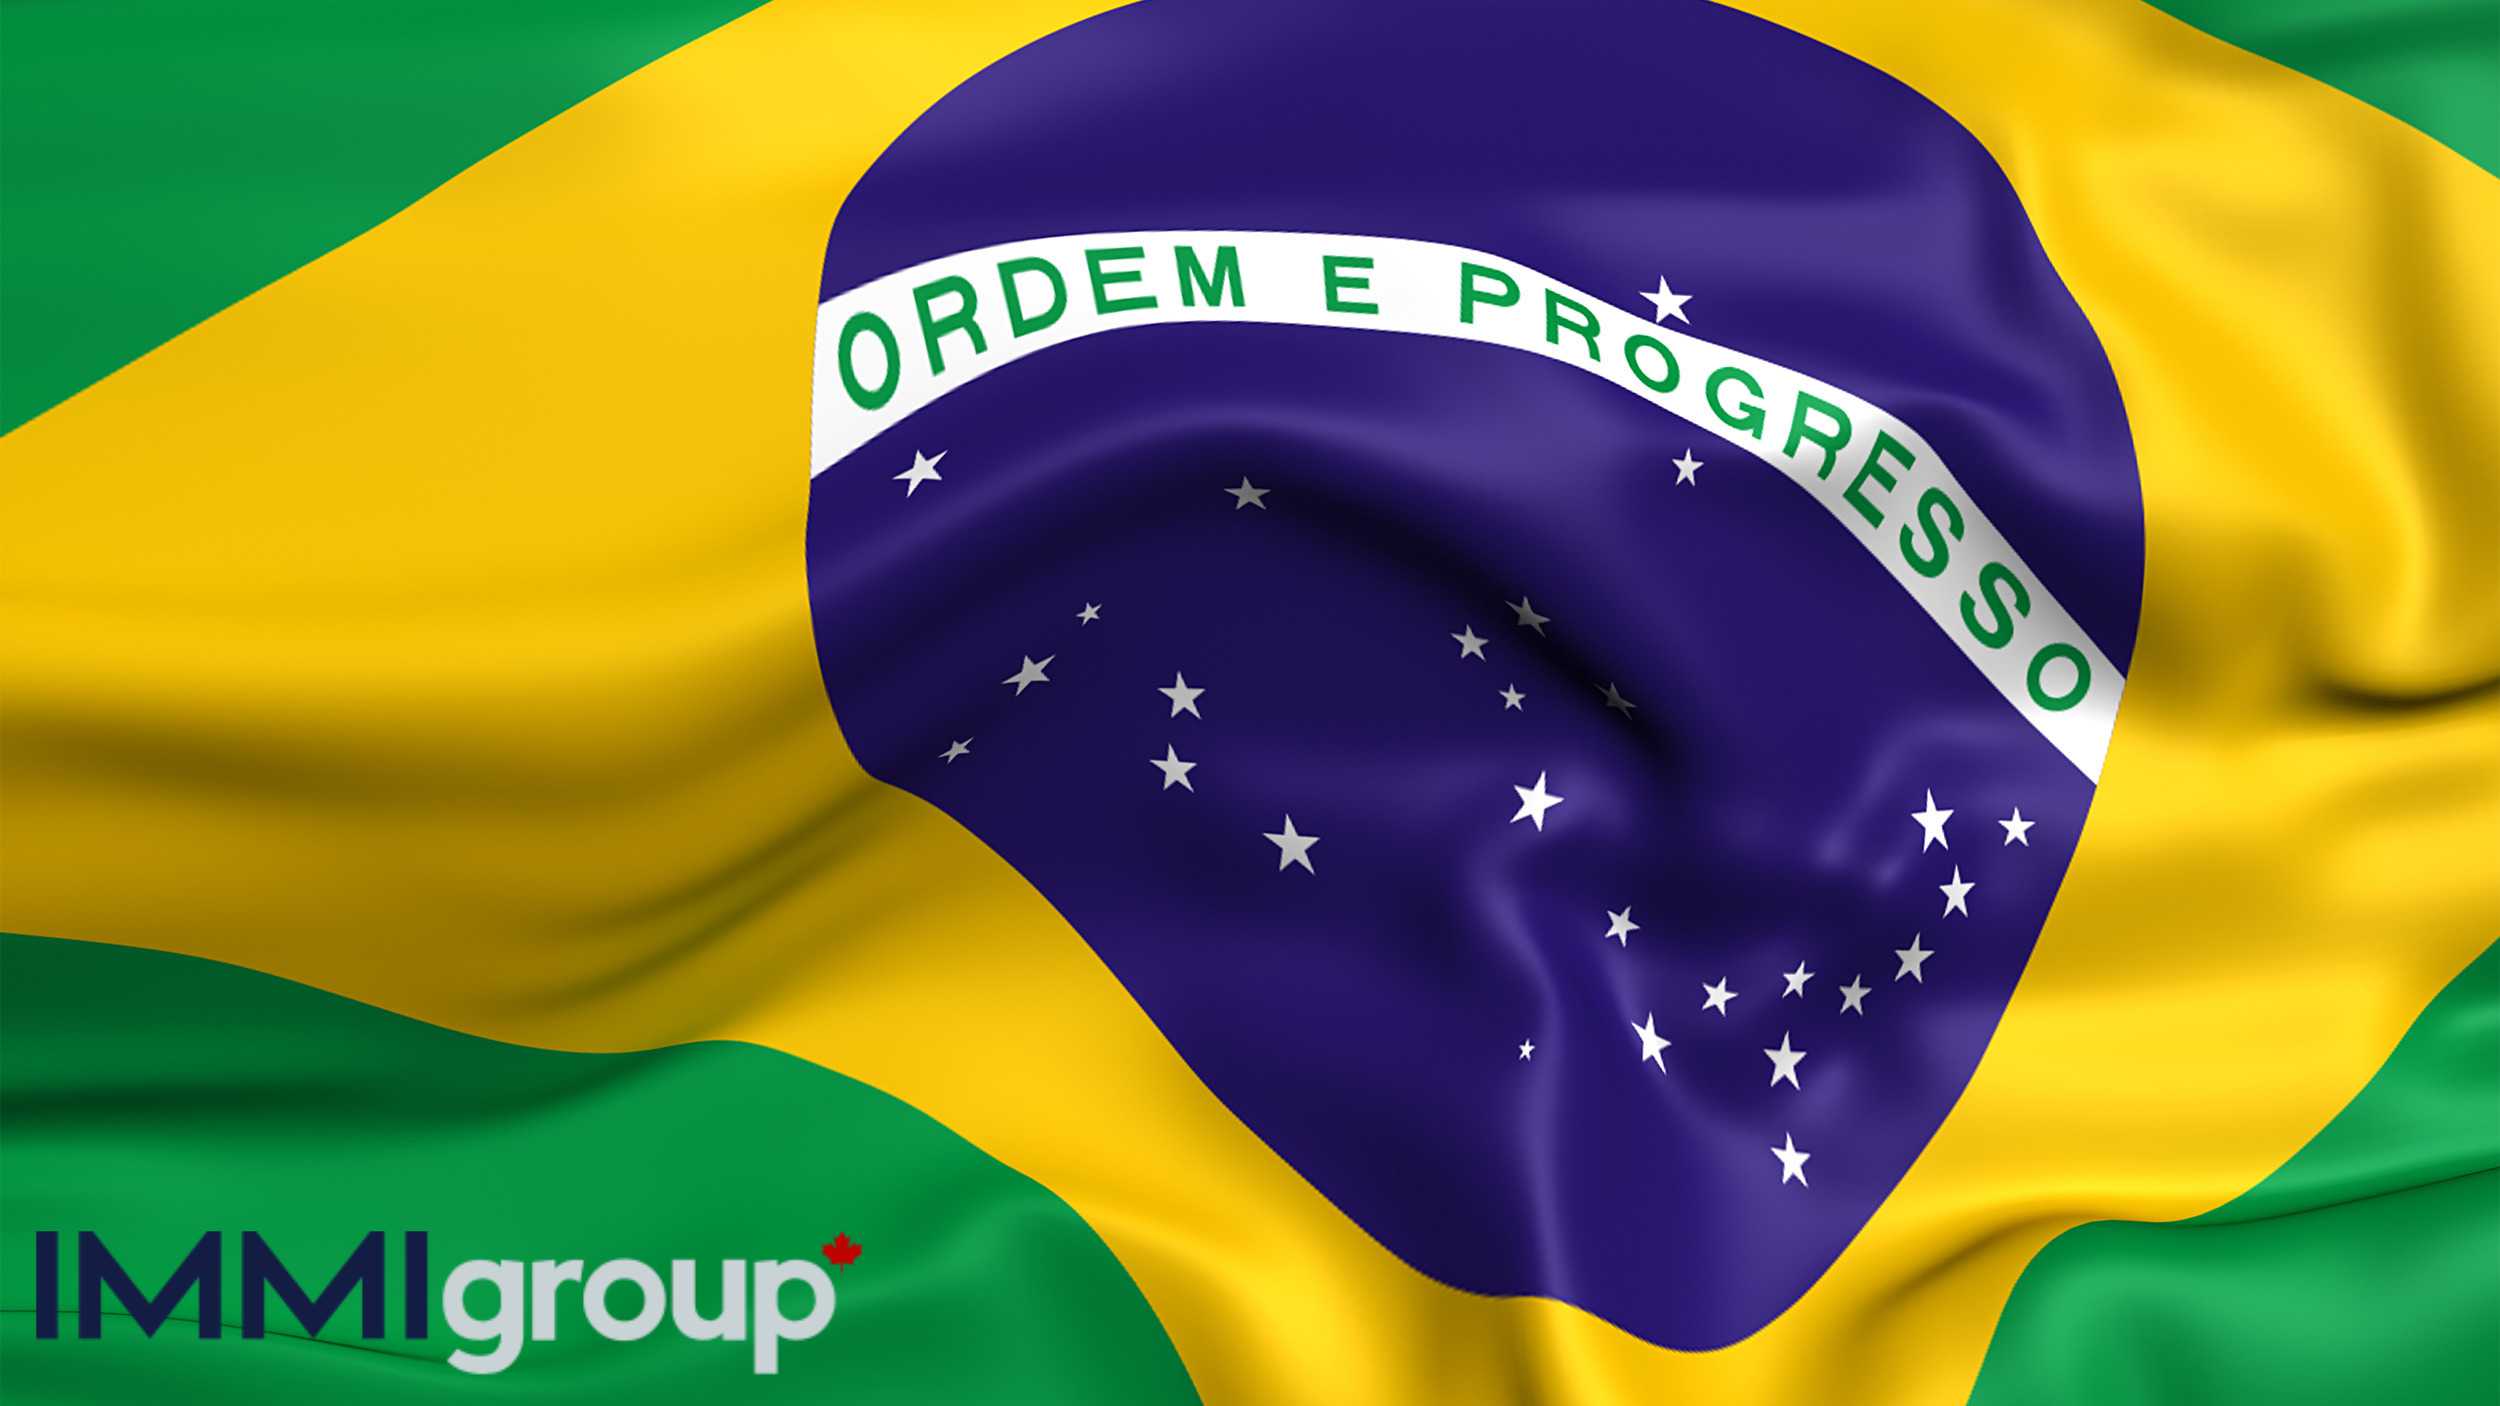 Agenda novembro de 2023: Santos tem sequência crucial pelo Brasileiro e  Sereias em decisão - Diário do Peixe